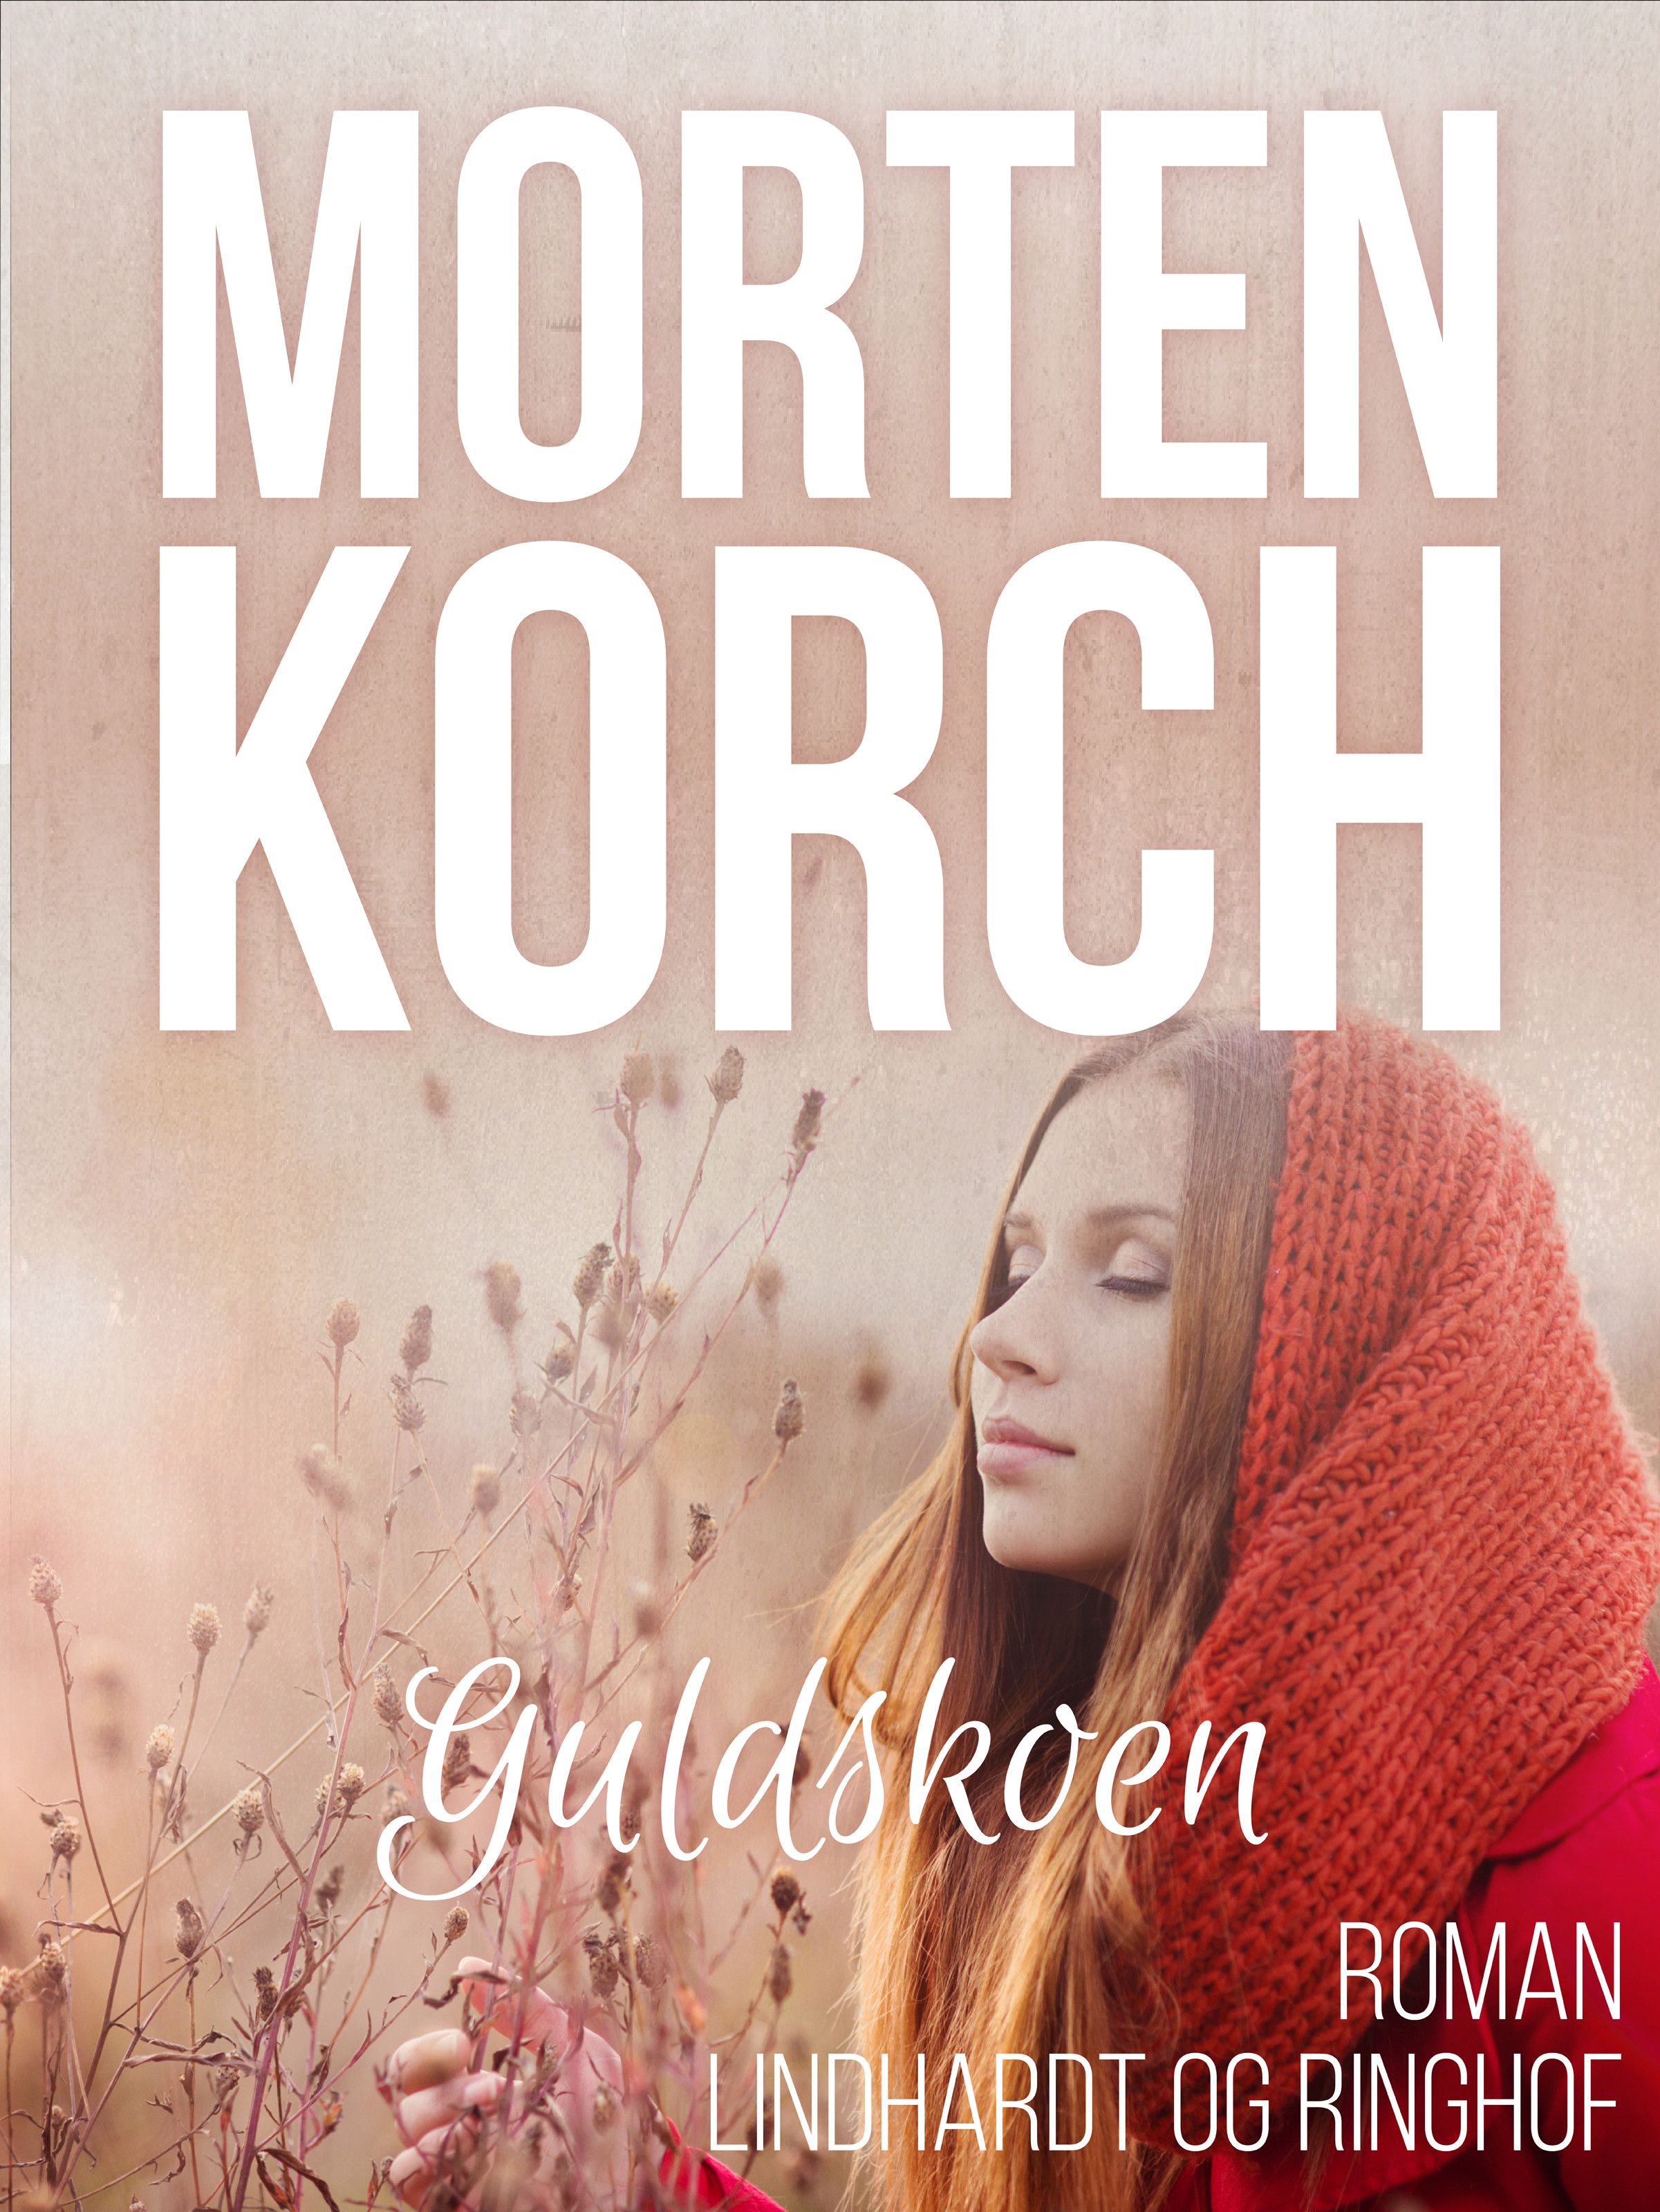 Guldskoen, ljudbok av Morten Korch